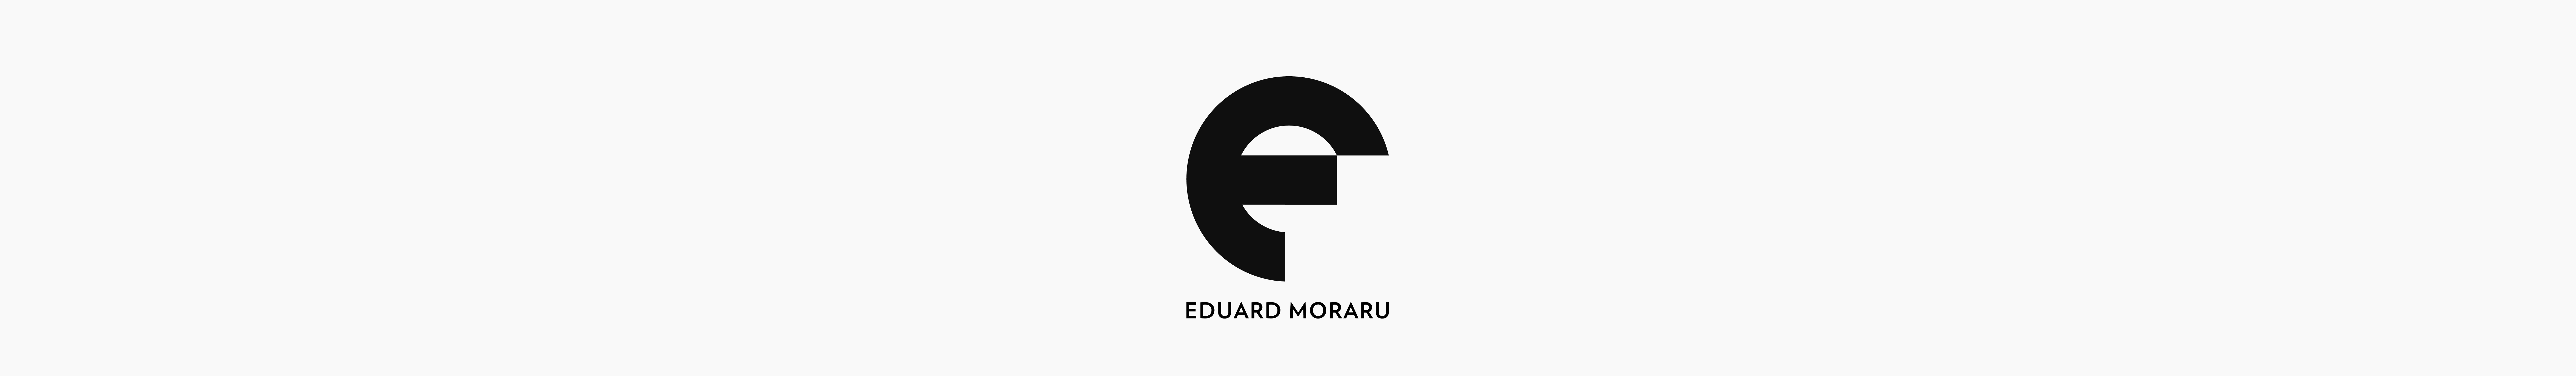 Eduard Moraru のプロファイルバナー